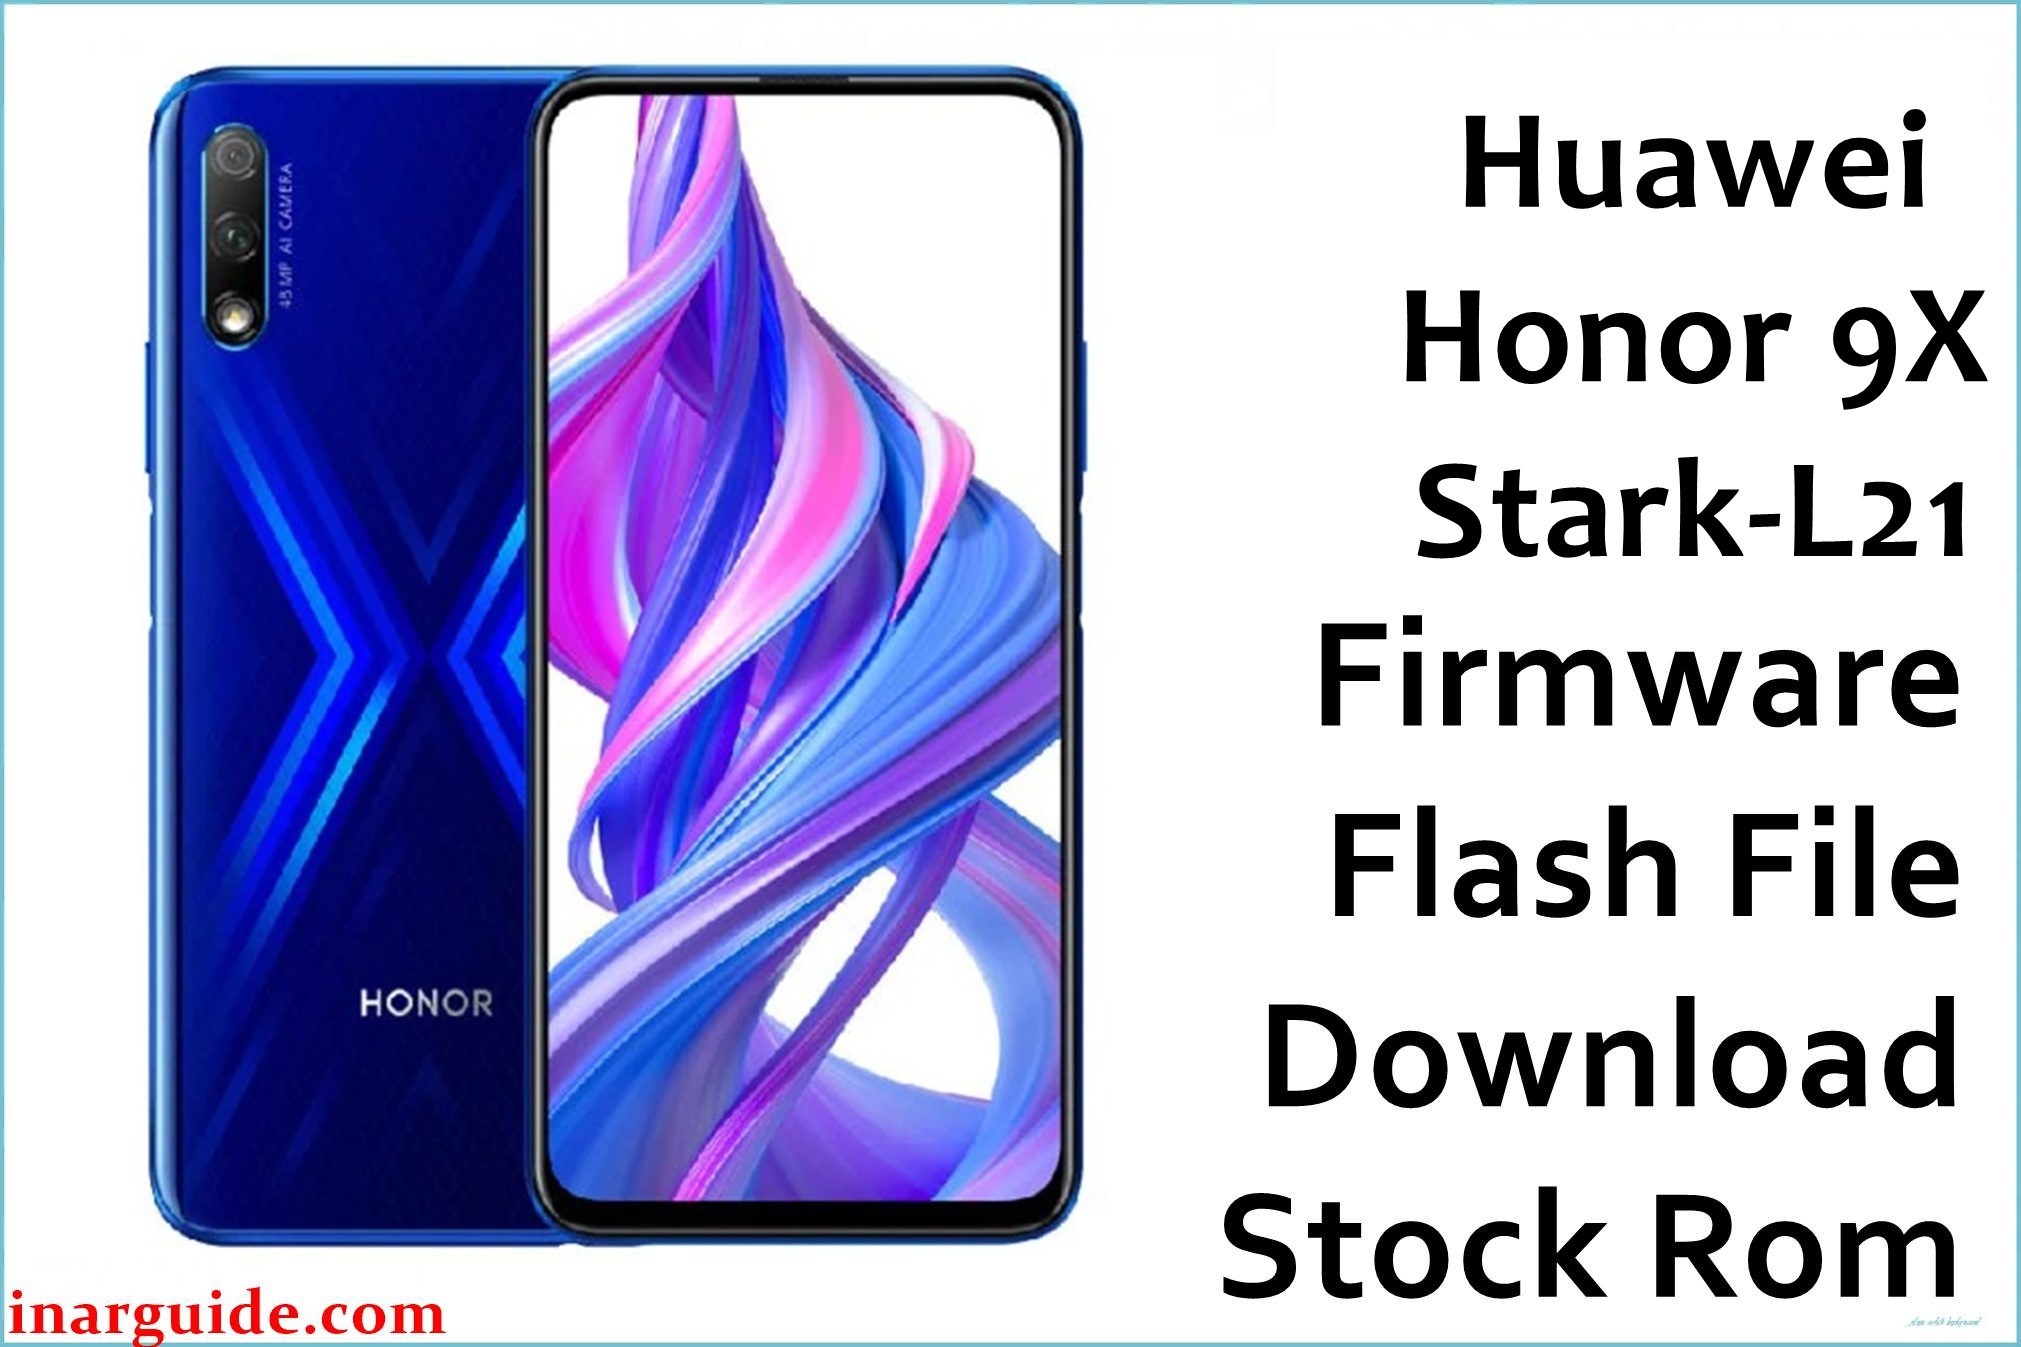 Huawei Honor 9X Stark L21